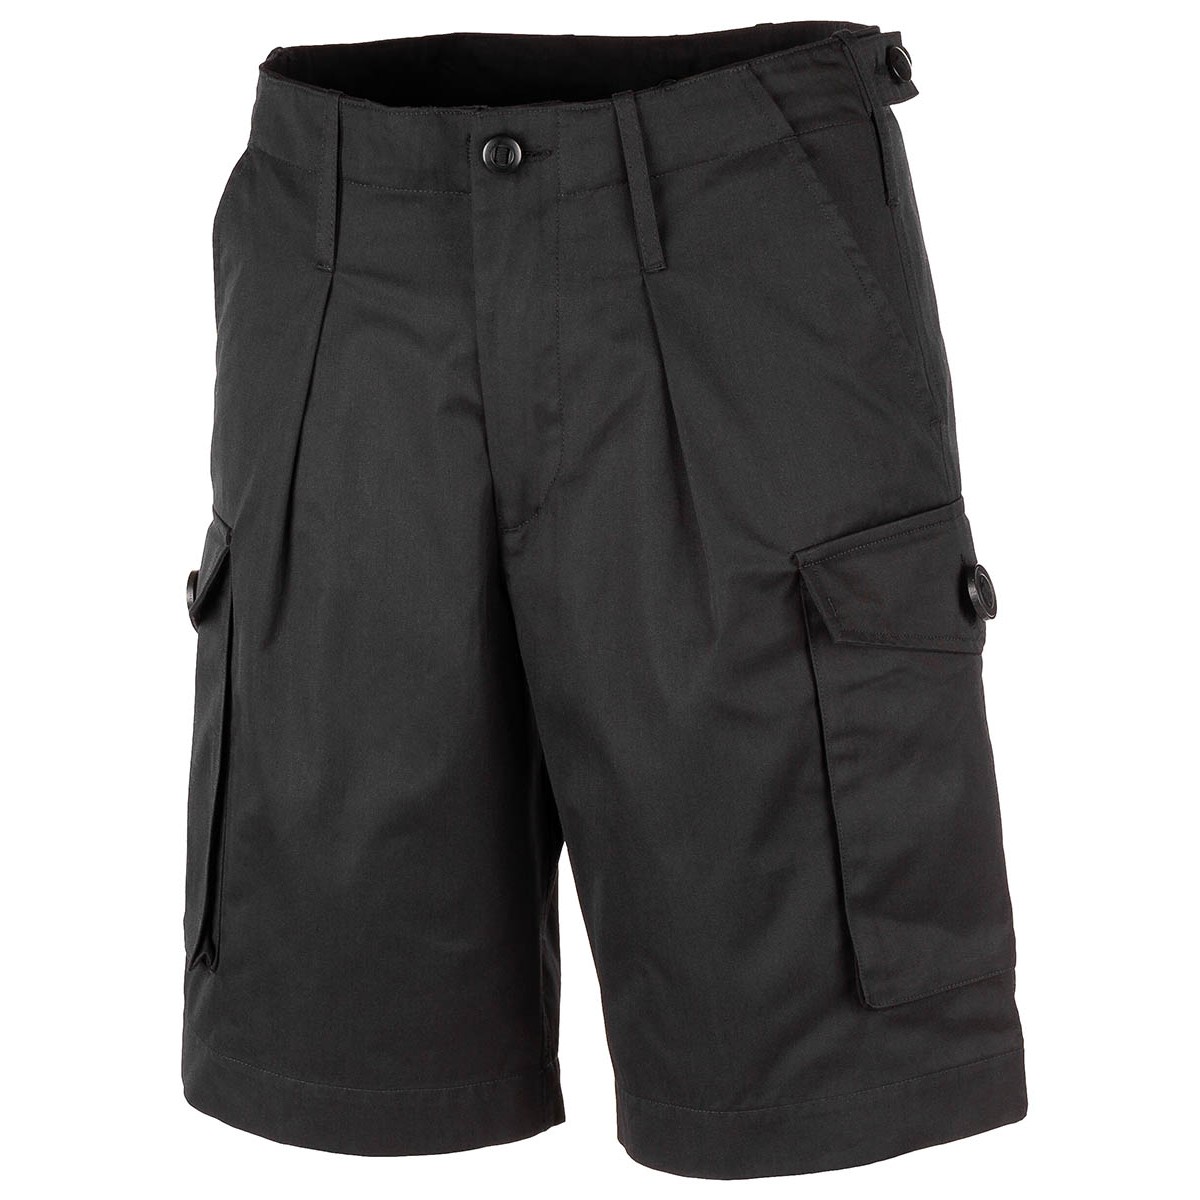 Krátké kalhoty MFH Combat Bermuda - černé, 3XL